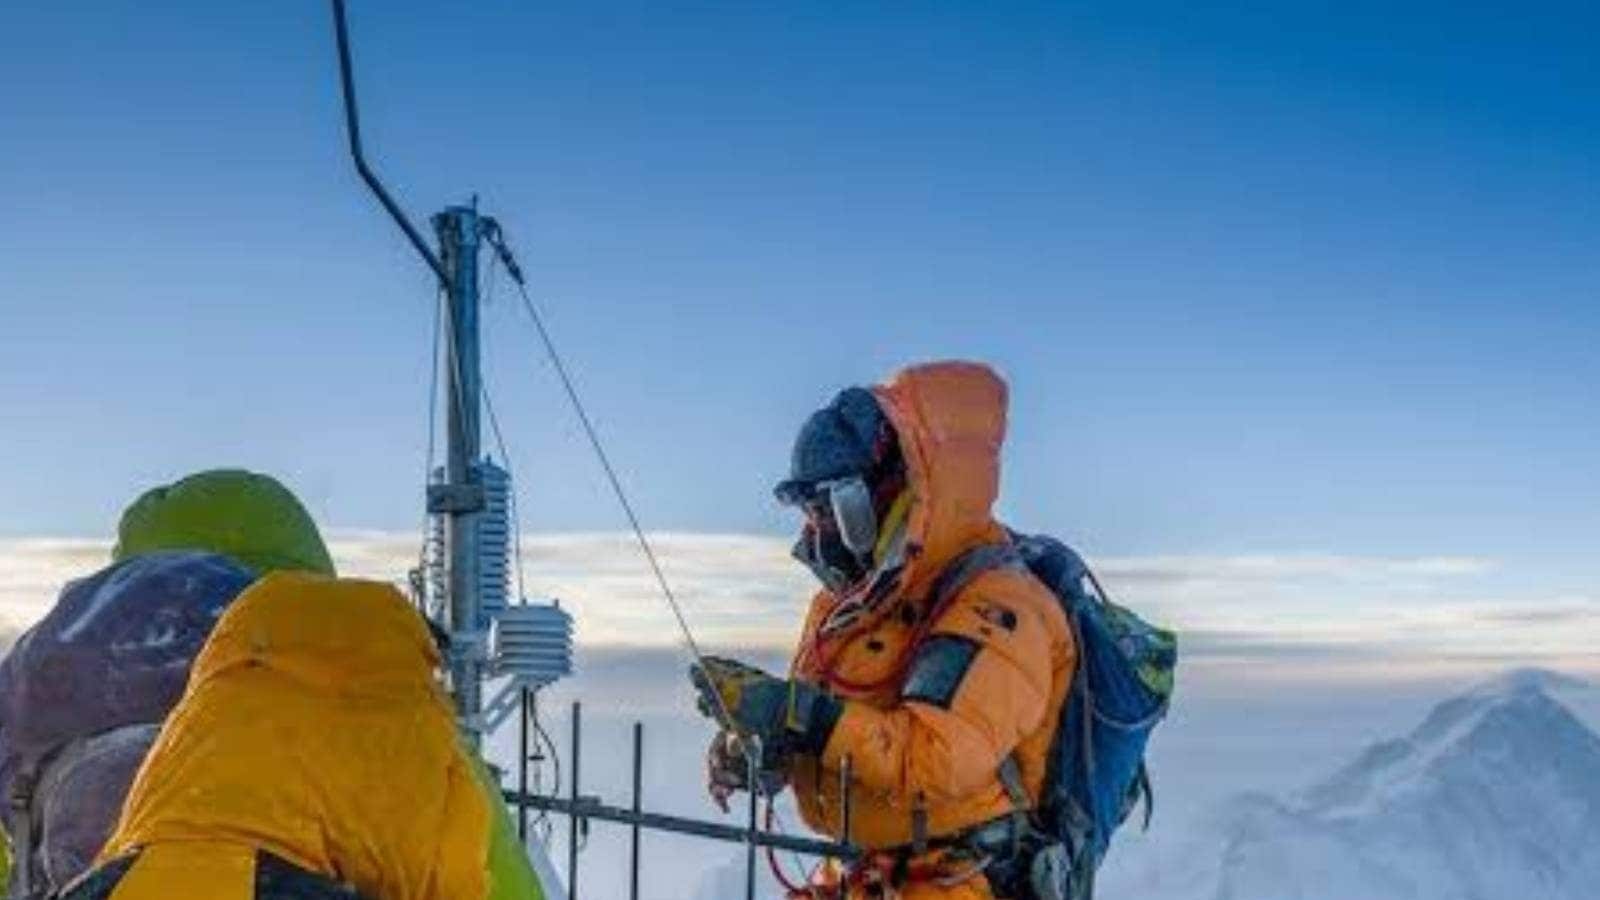 মাউন্ট এভারেস্টে শীর্ষবিন্দুর সামান্য নীচে তৈরি বিশ্বের উচ্চতম আবহাওয়া কেন্দ্র